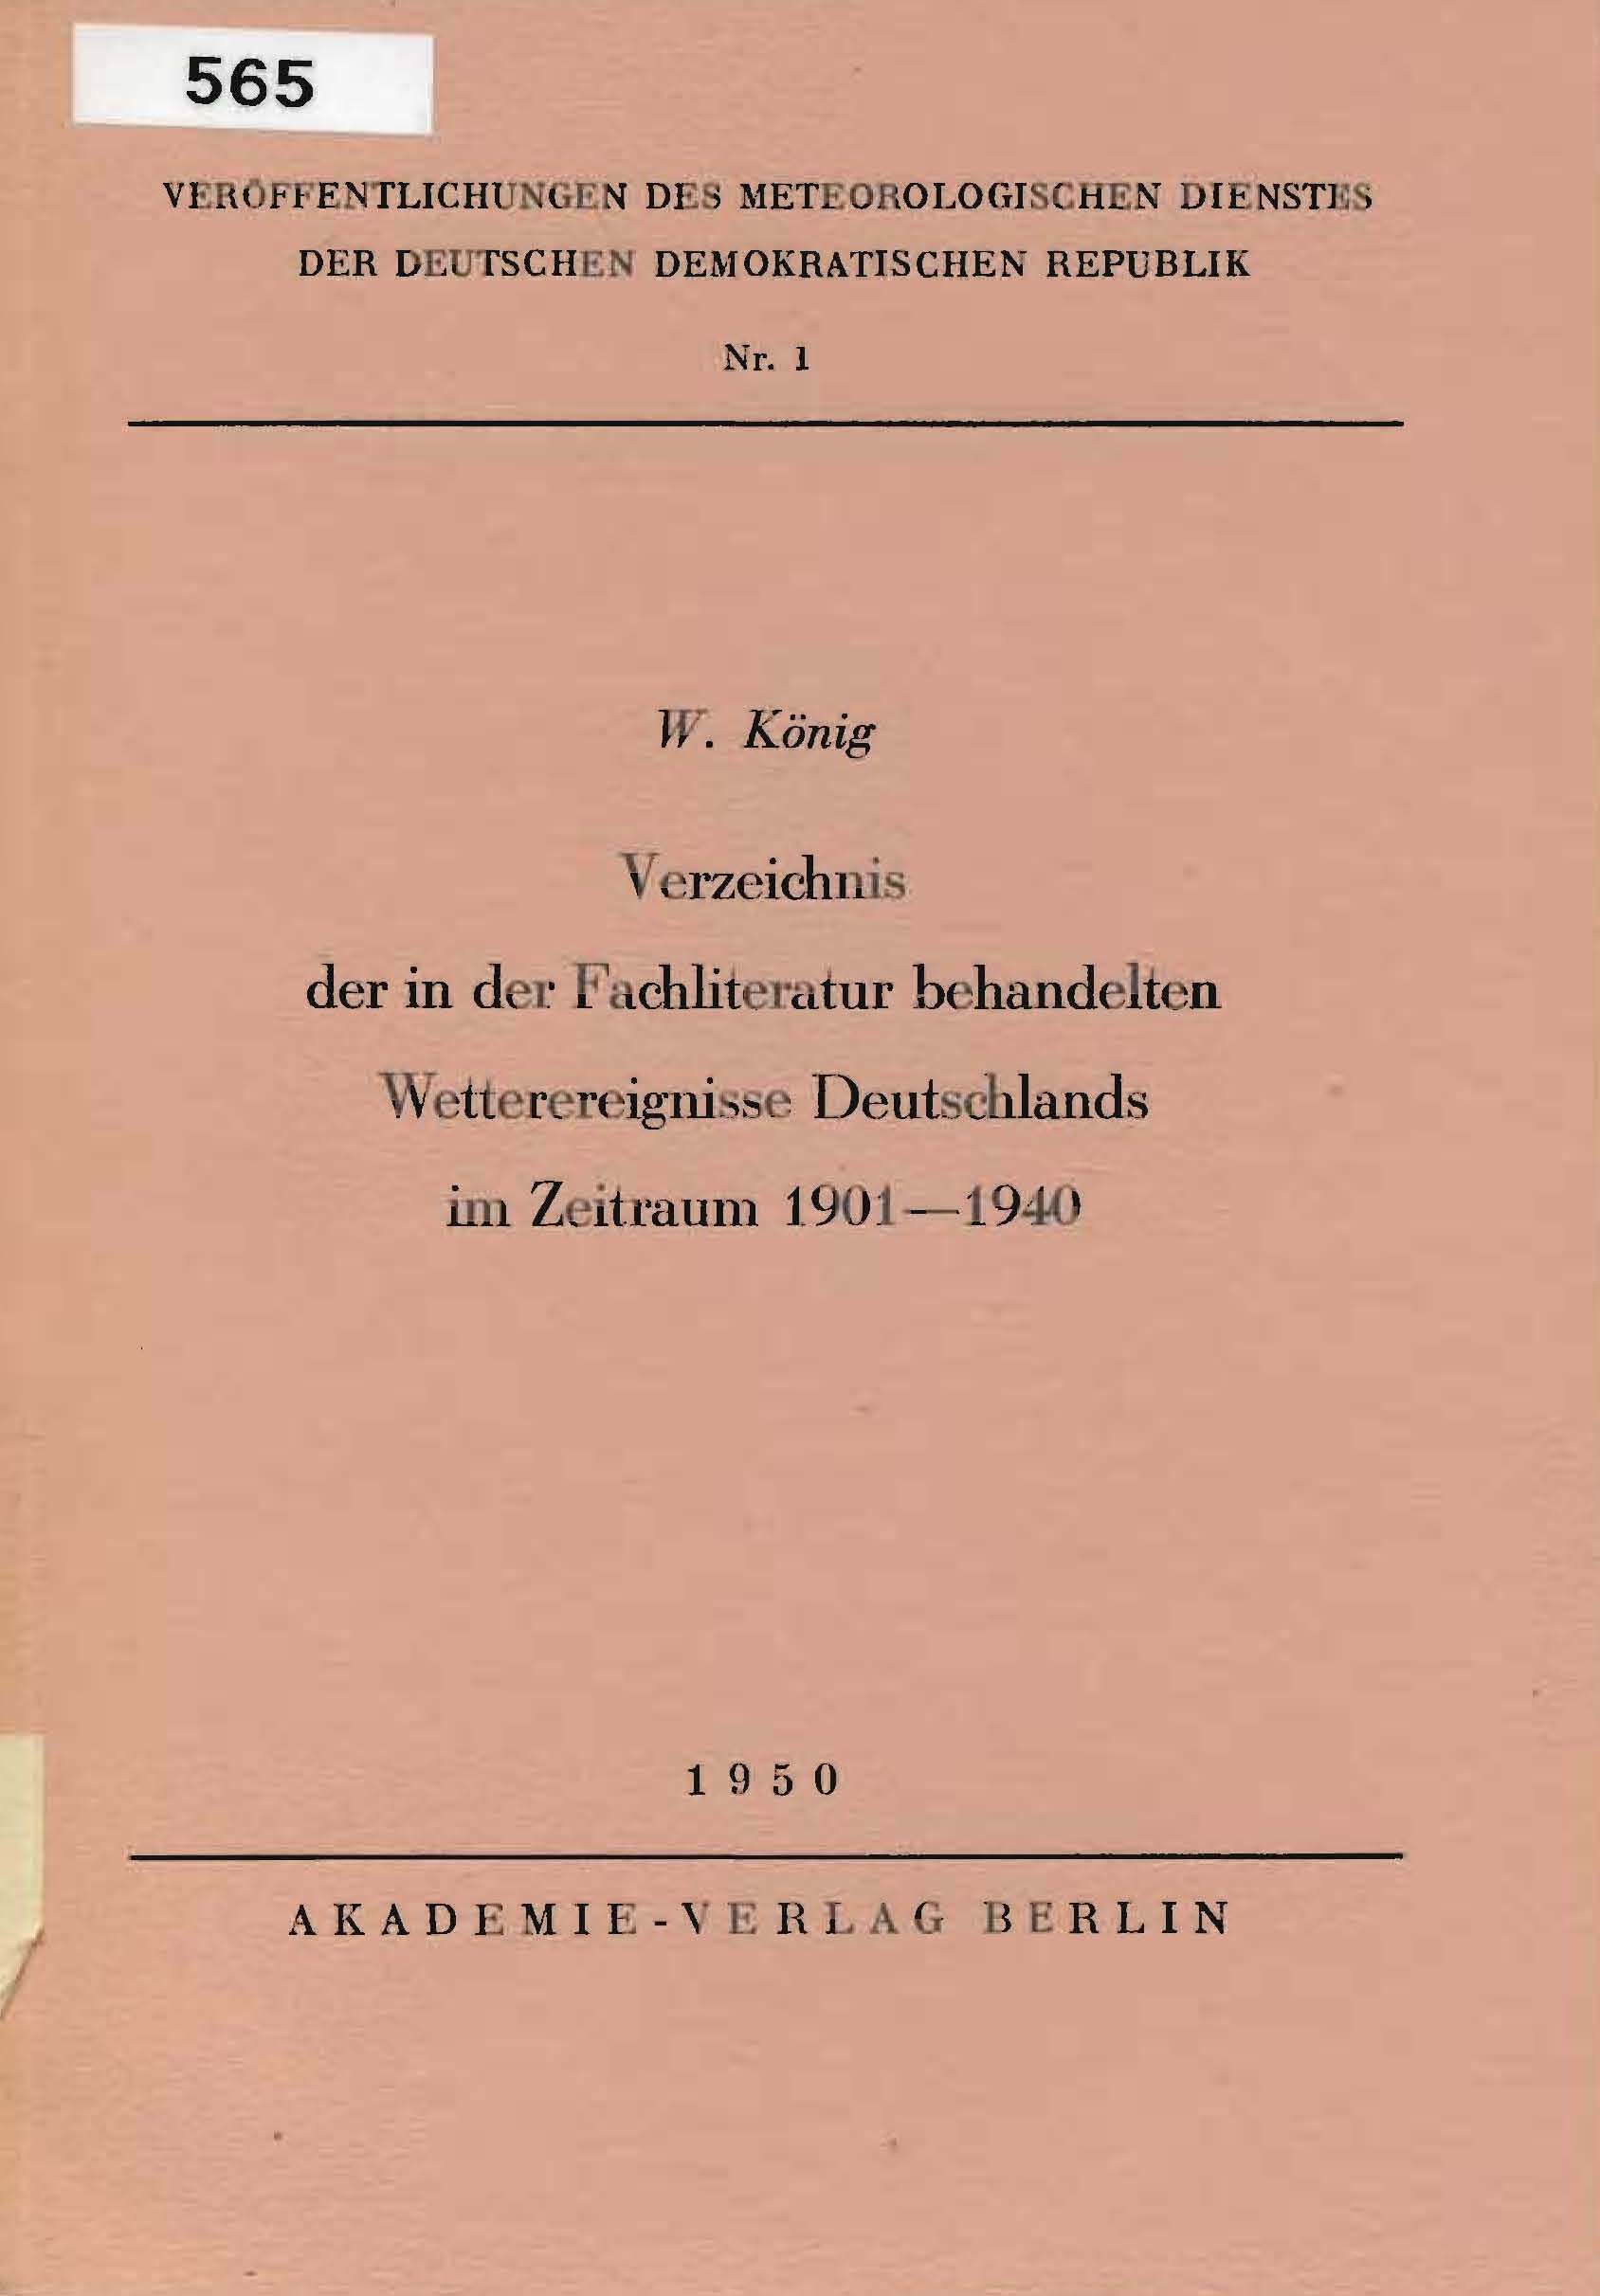 Verzeichnis der in der Fachliteratur behandelten Wetterereignisse Deutschlands im Zeitraum 1901-1940